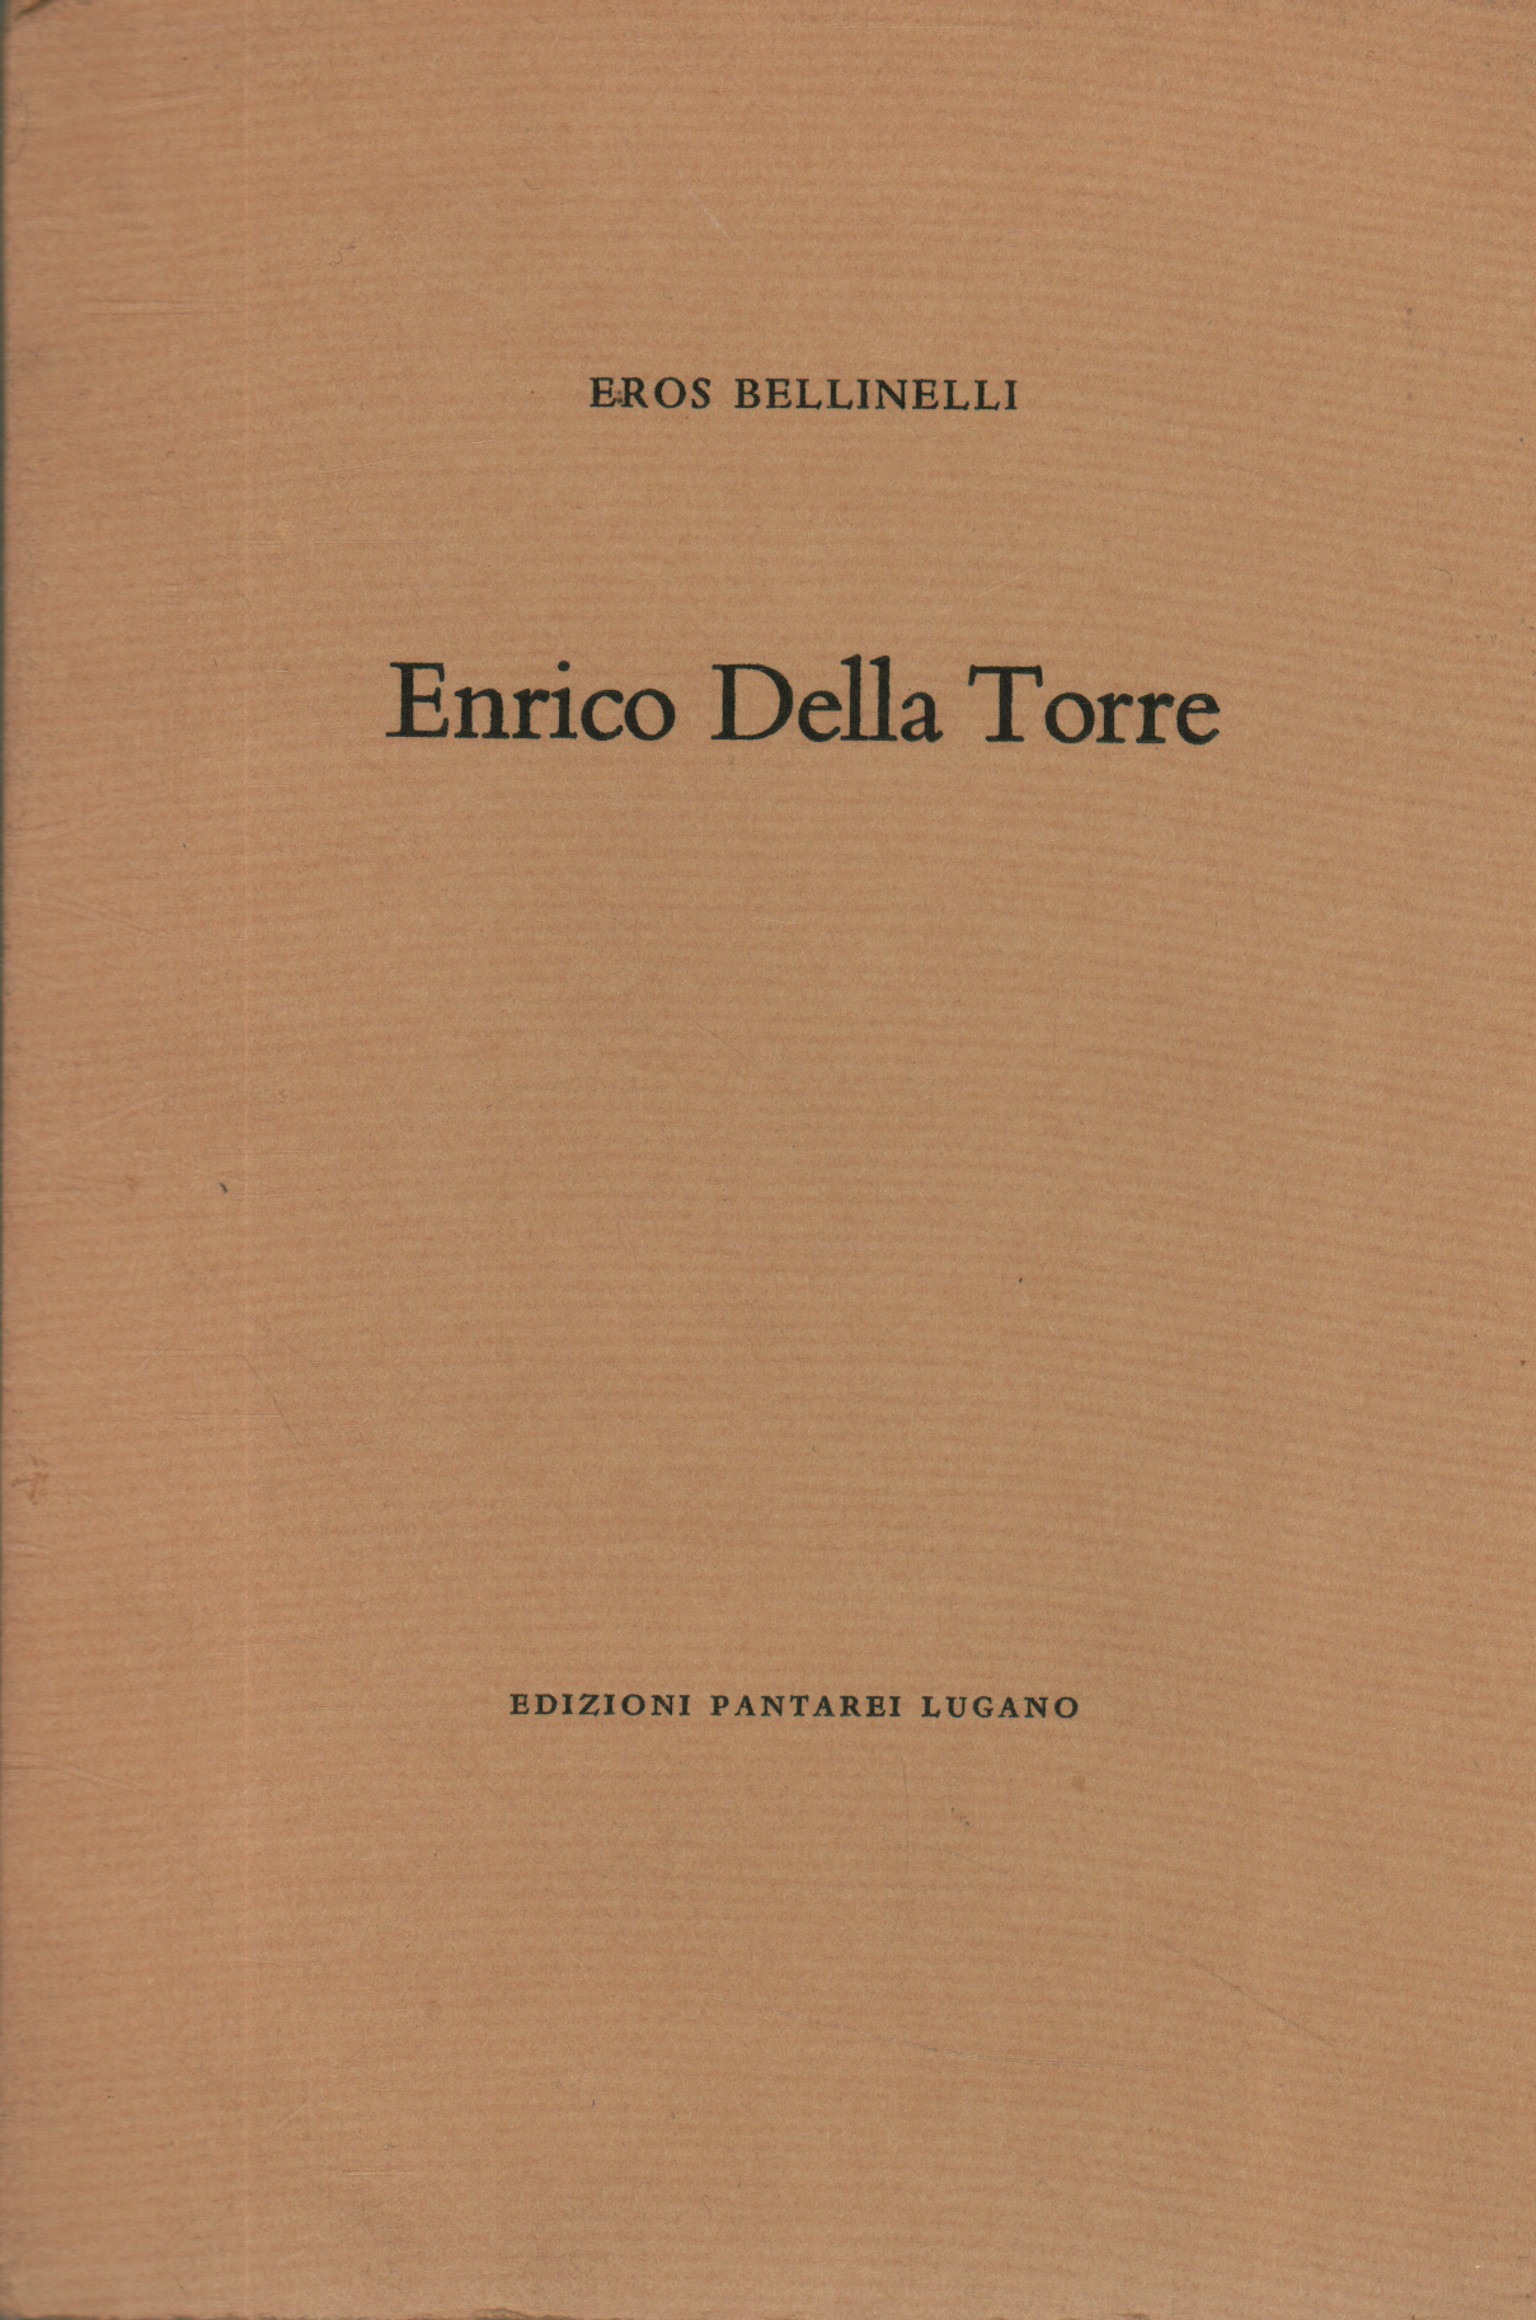 Enrico Della Torre, Eros Bellinelli